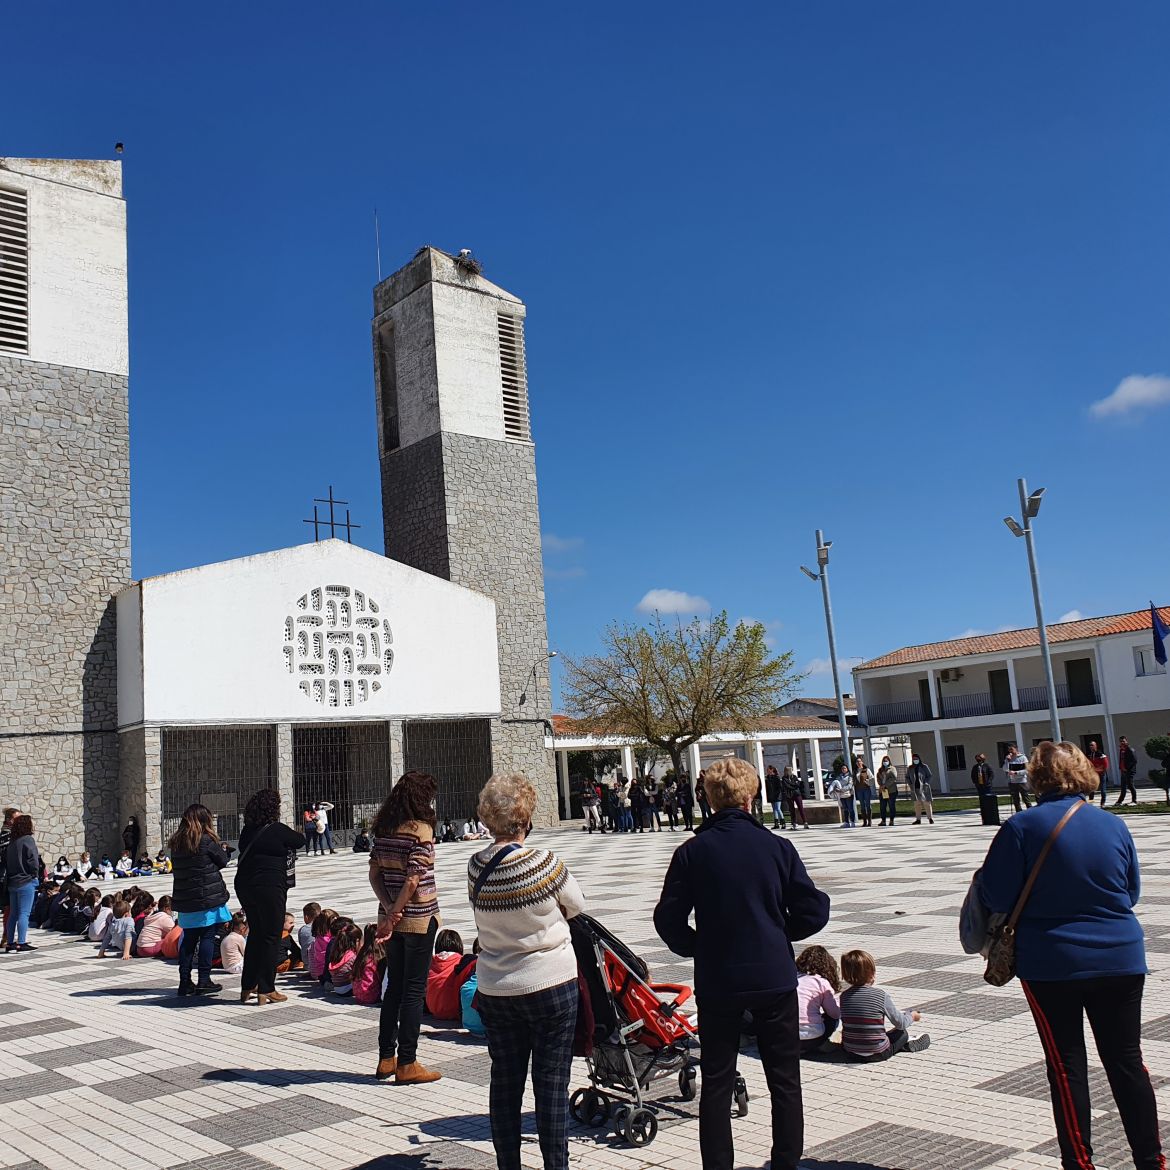 Plaza Principal del municipio Hernán Cortés delimitada por la Iglesia y el Ayuntamiento. Niños sentados en línea acompañados por adultos.